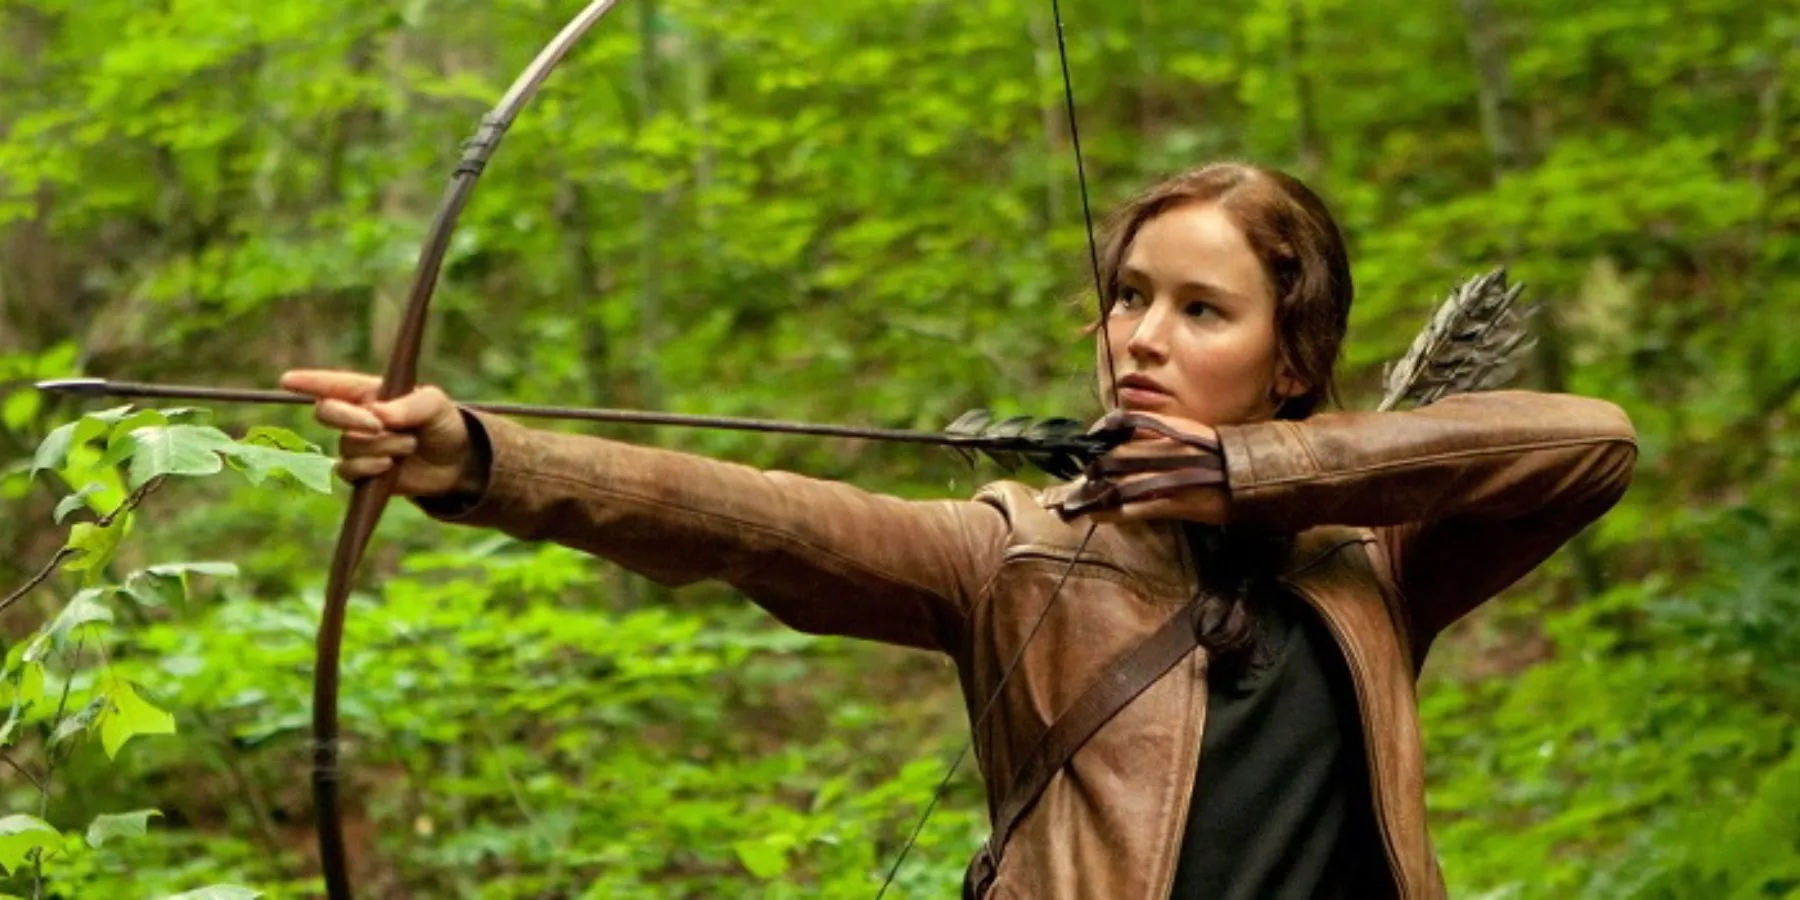 ジェニファー・ローレンスがハンガーゲームで弓を持って立つ